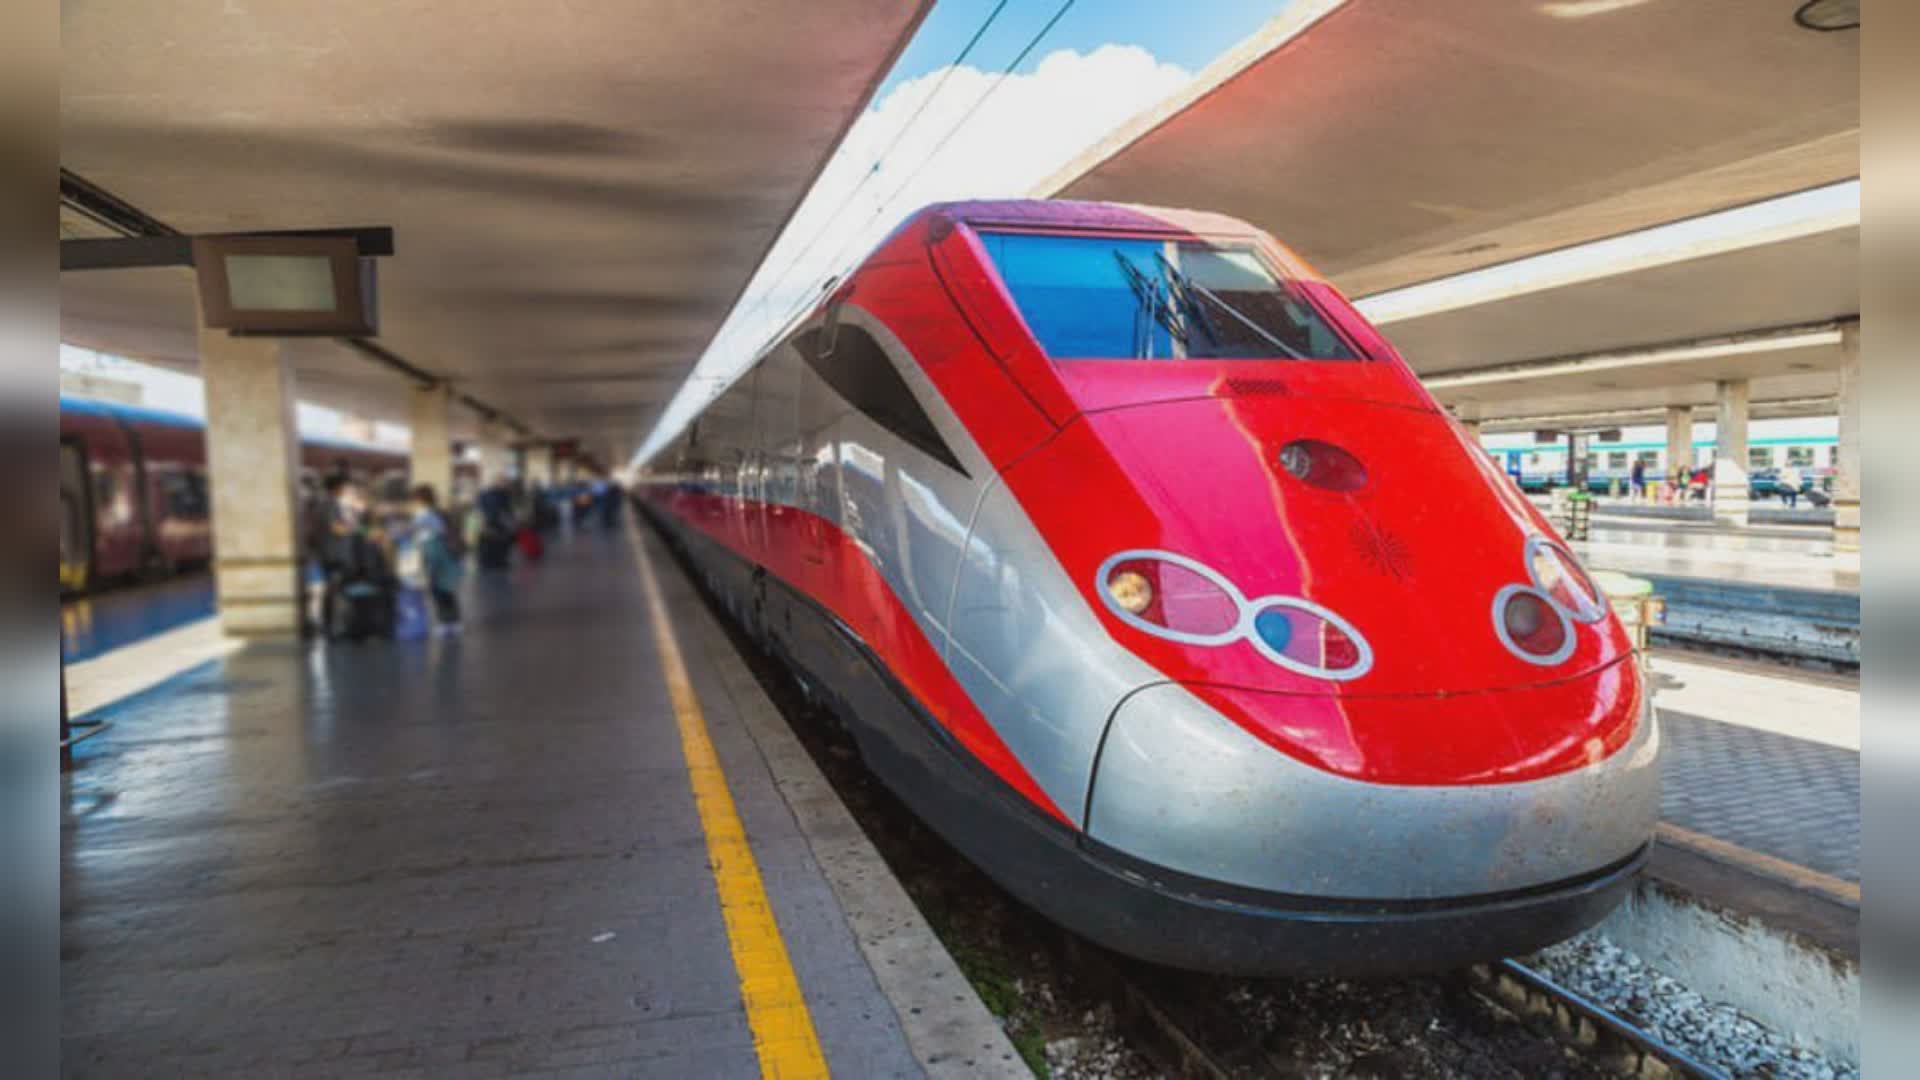 A Genova in 56 minuti con treno e metro: il sogno dei milanesi con la nuova linea M6 e il Terzo Valico